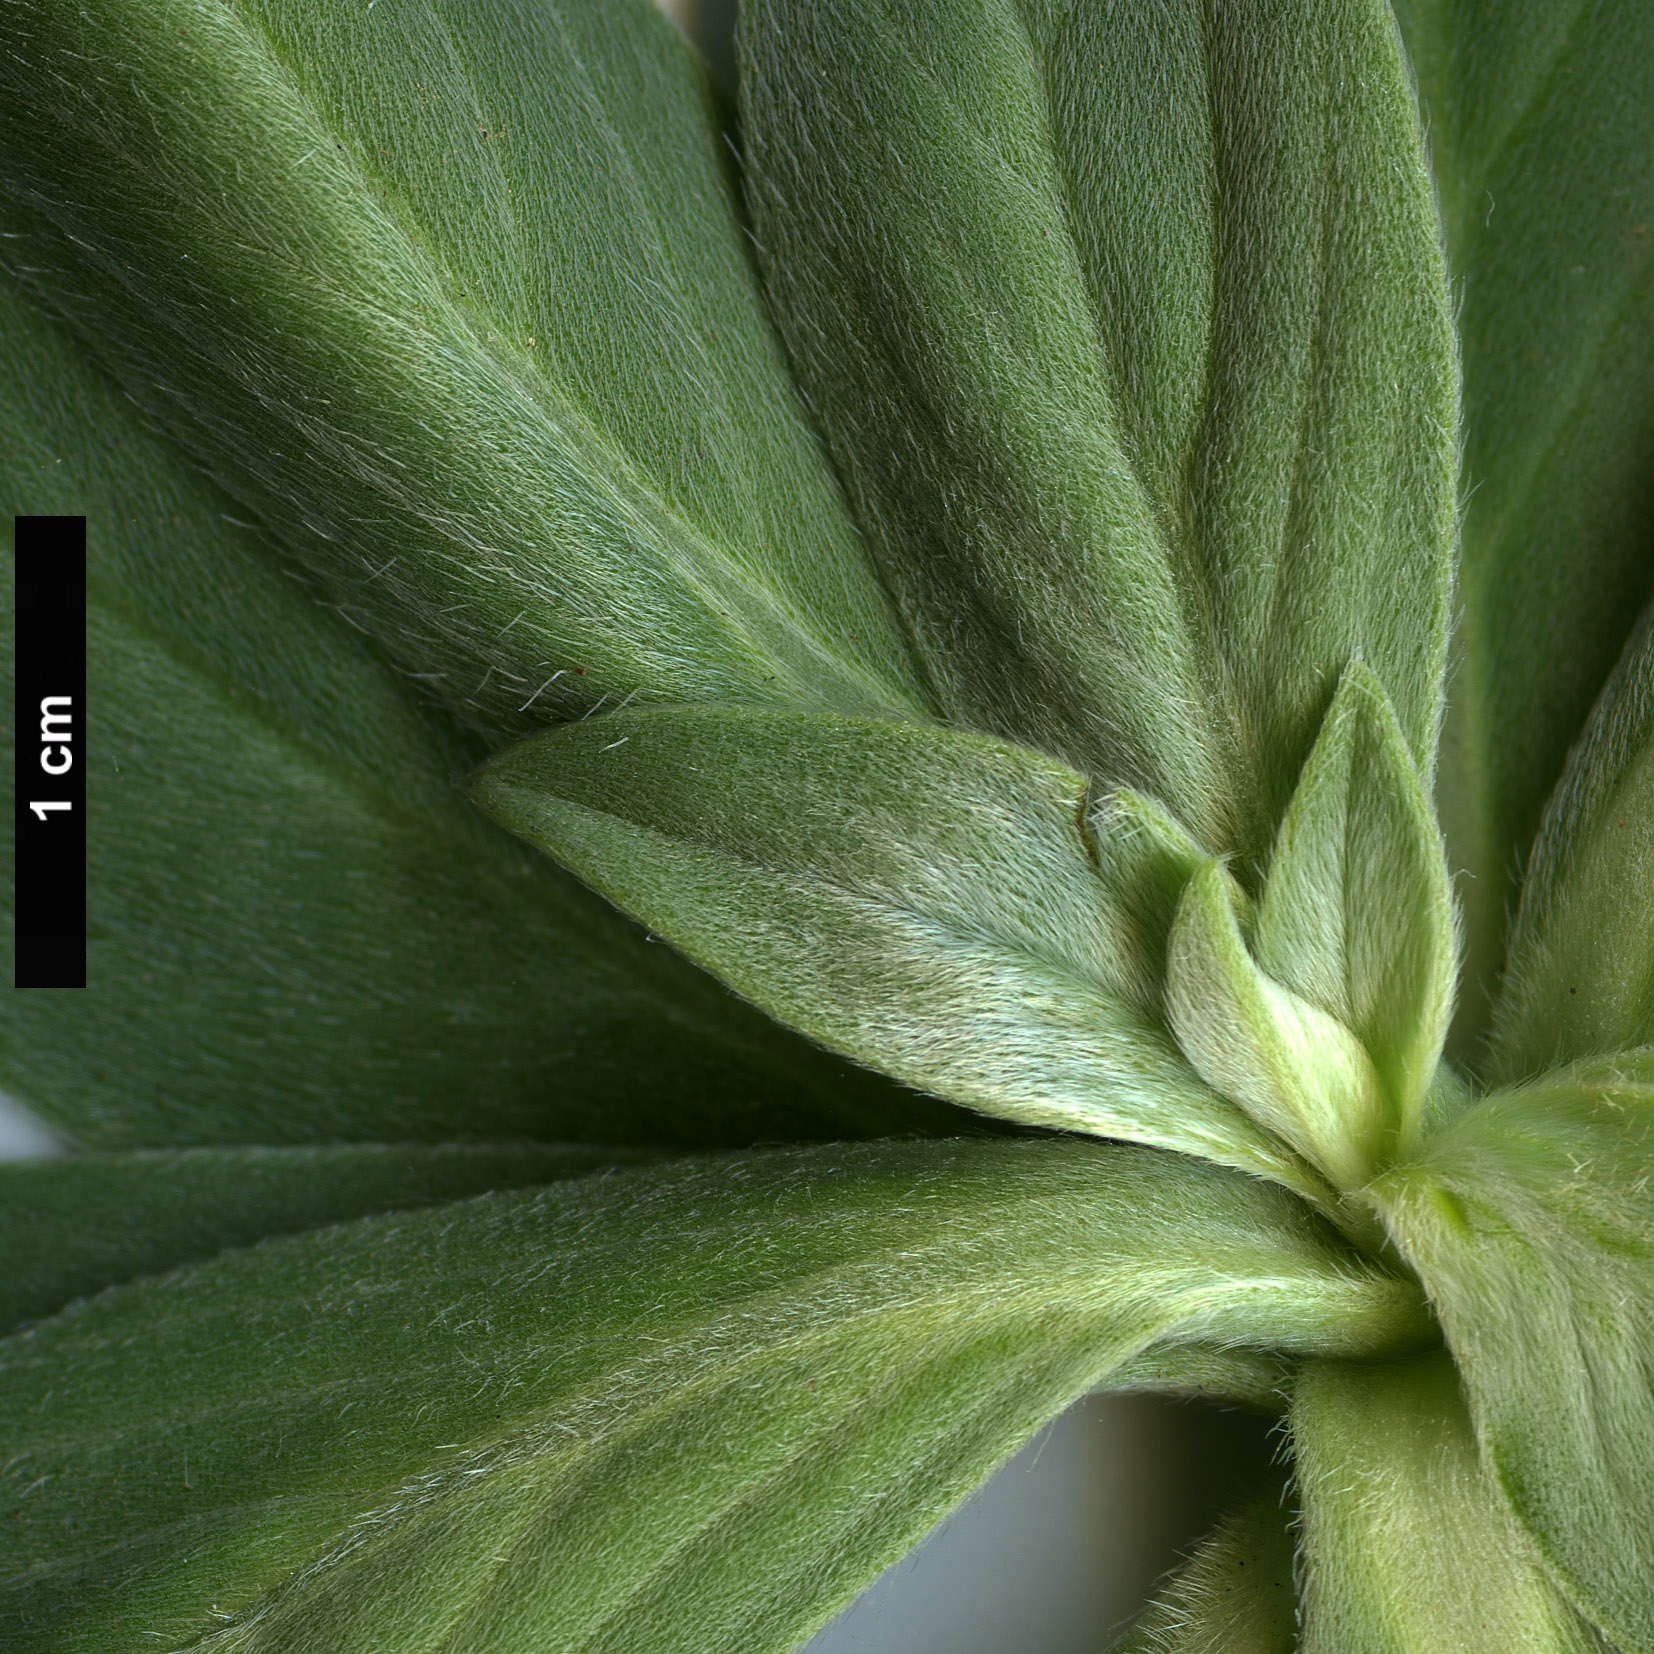 High resolution image: Family: Boraginaceae - Genus: Echium - Taxon: hierrense